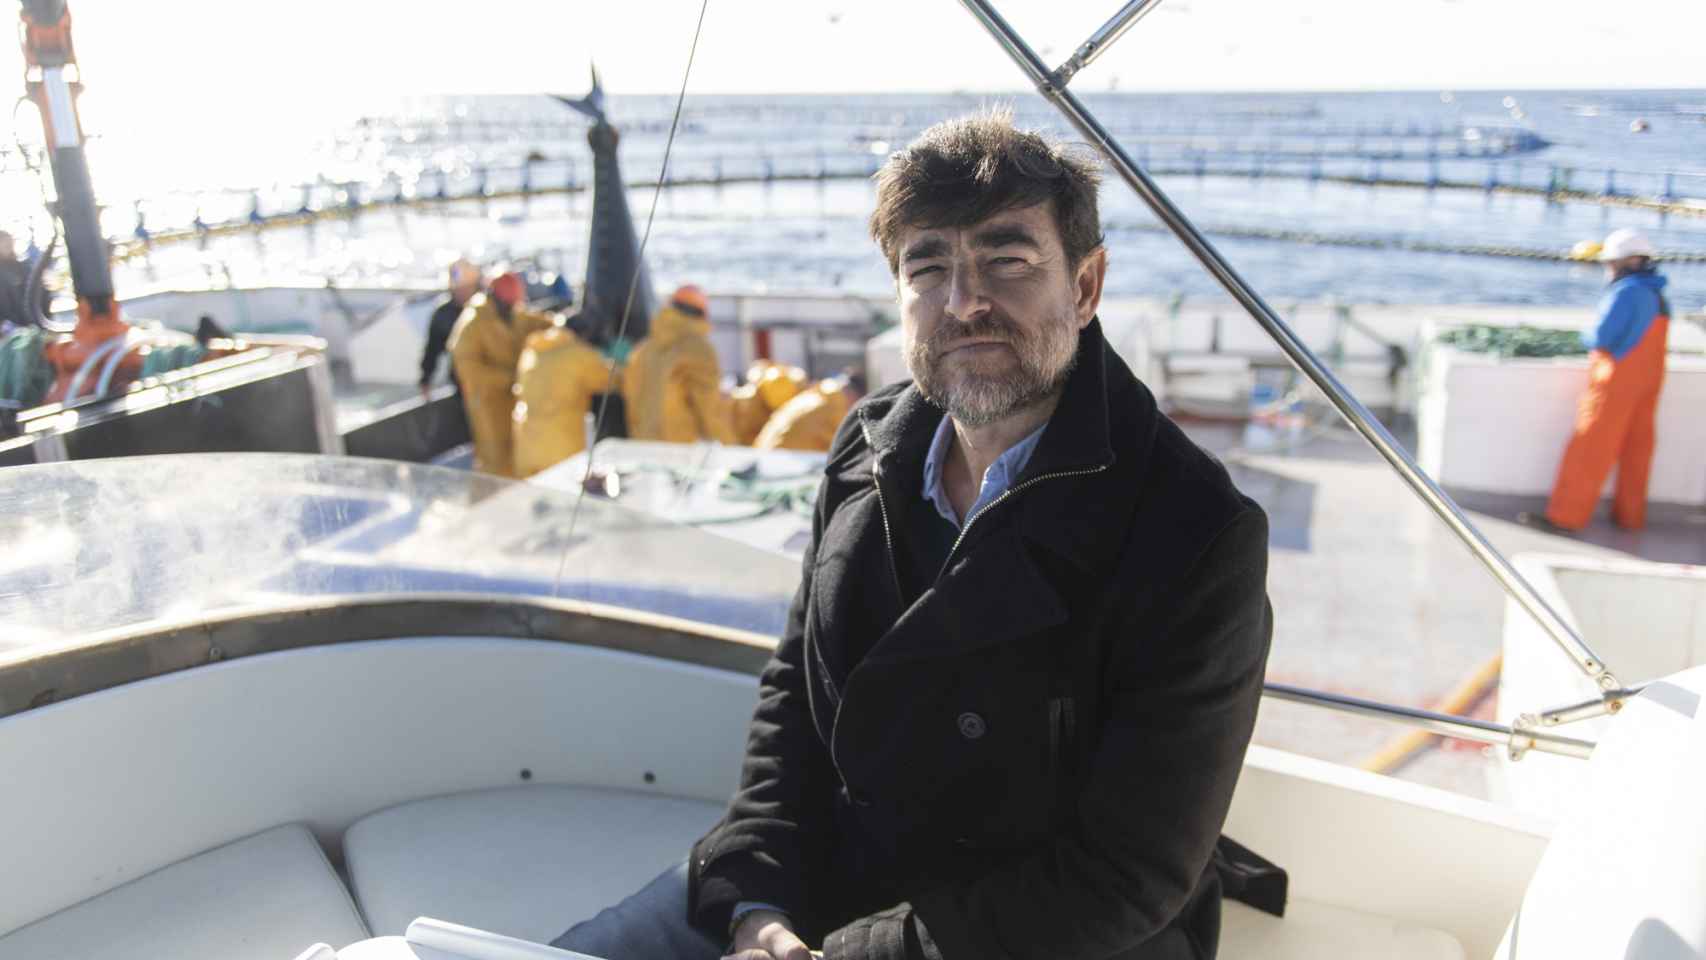 David Martínez, director adjunto de Ricardo Fuentes e Hijos. A sus espaldas unos marineros capturan el atún rojo del mar Mediterráneo.